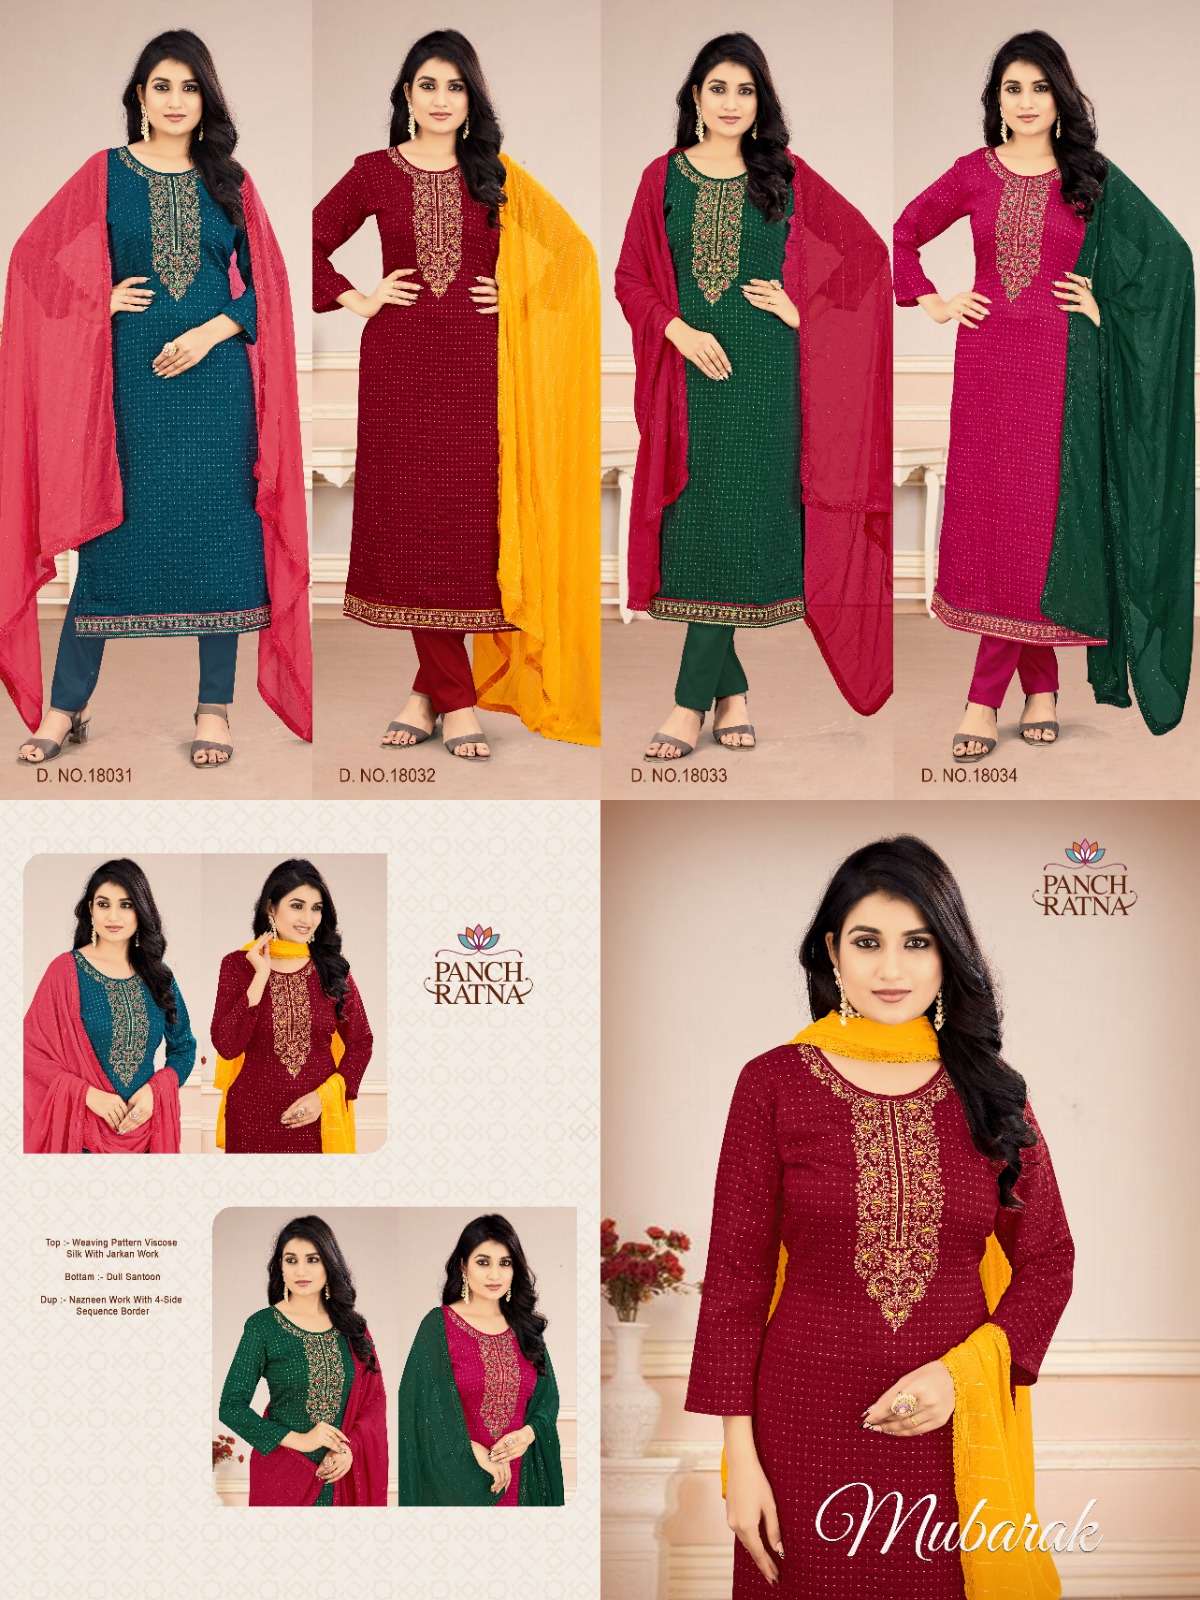 panch ratna mubarak 18031-18034 series stylish designer salwar kameez catalogue wholesaler surat 